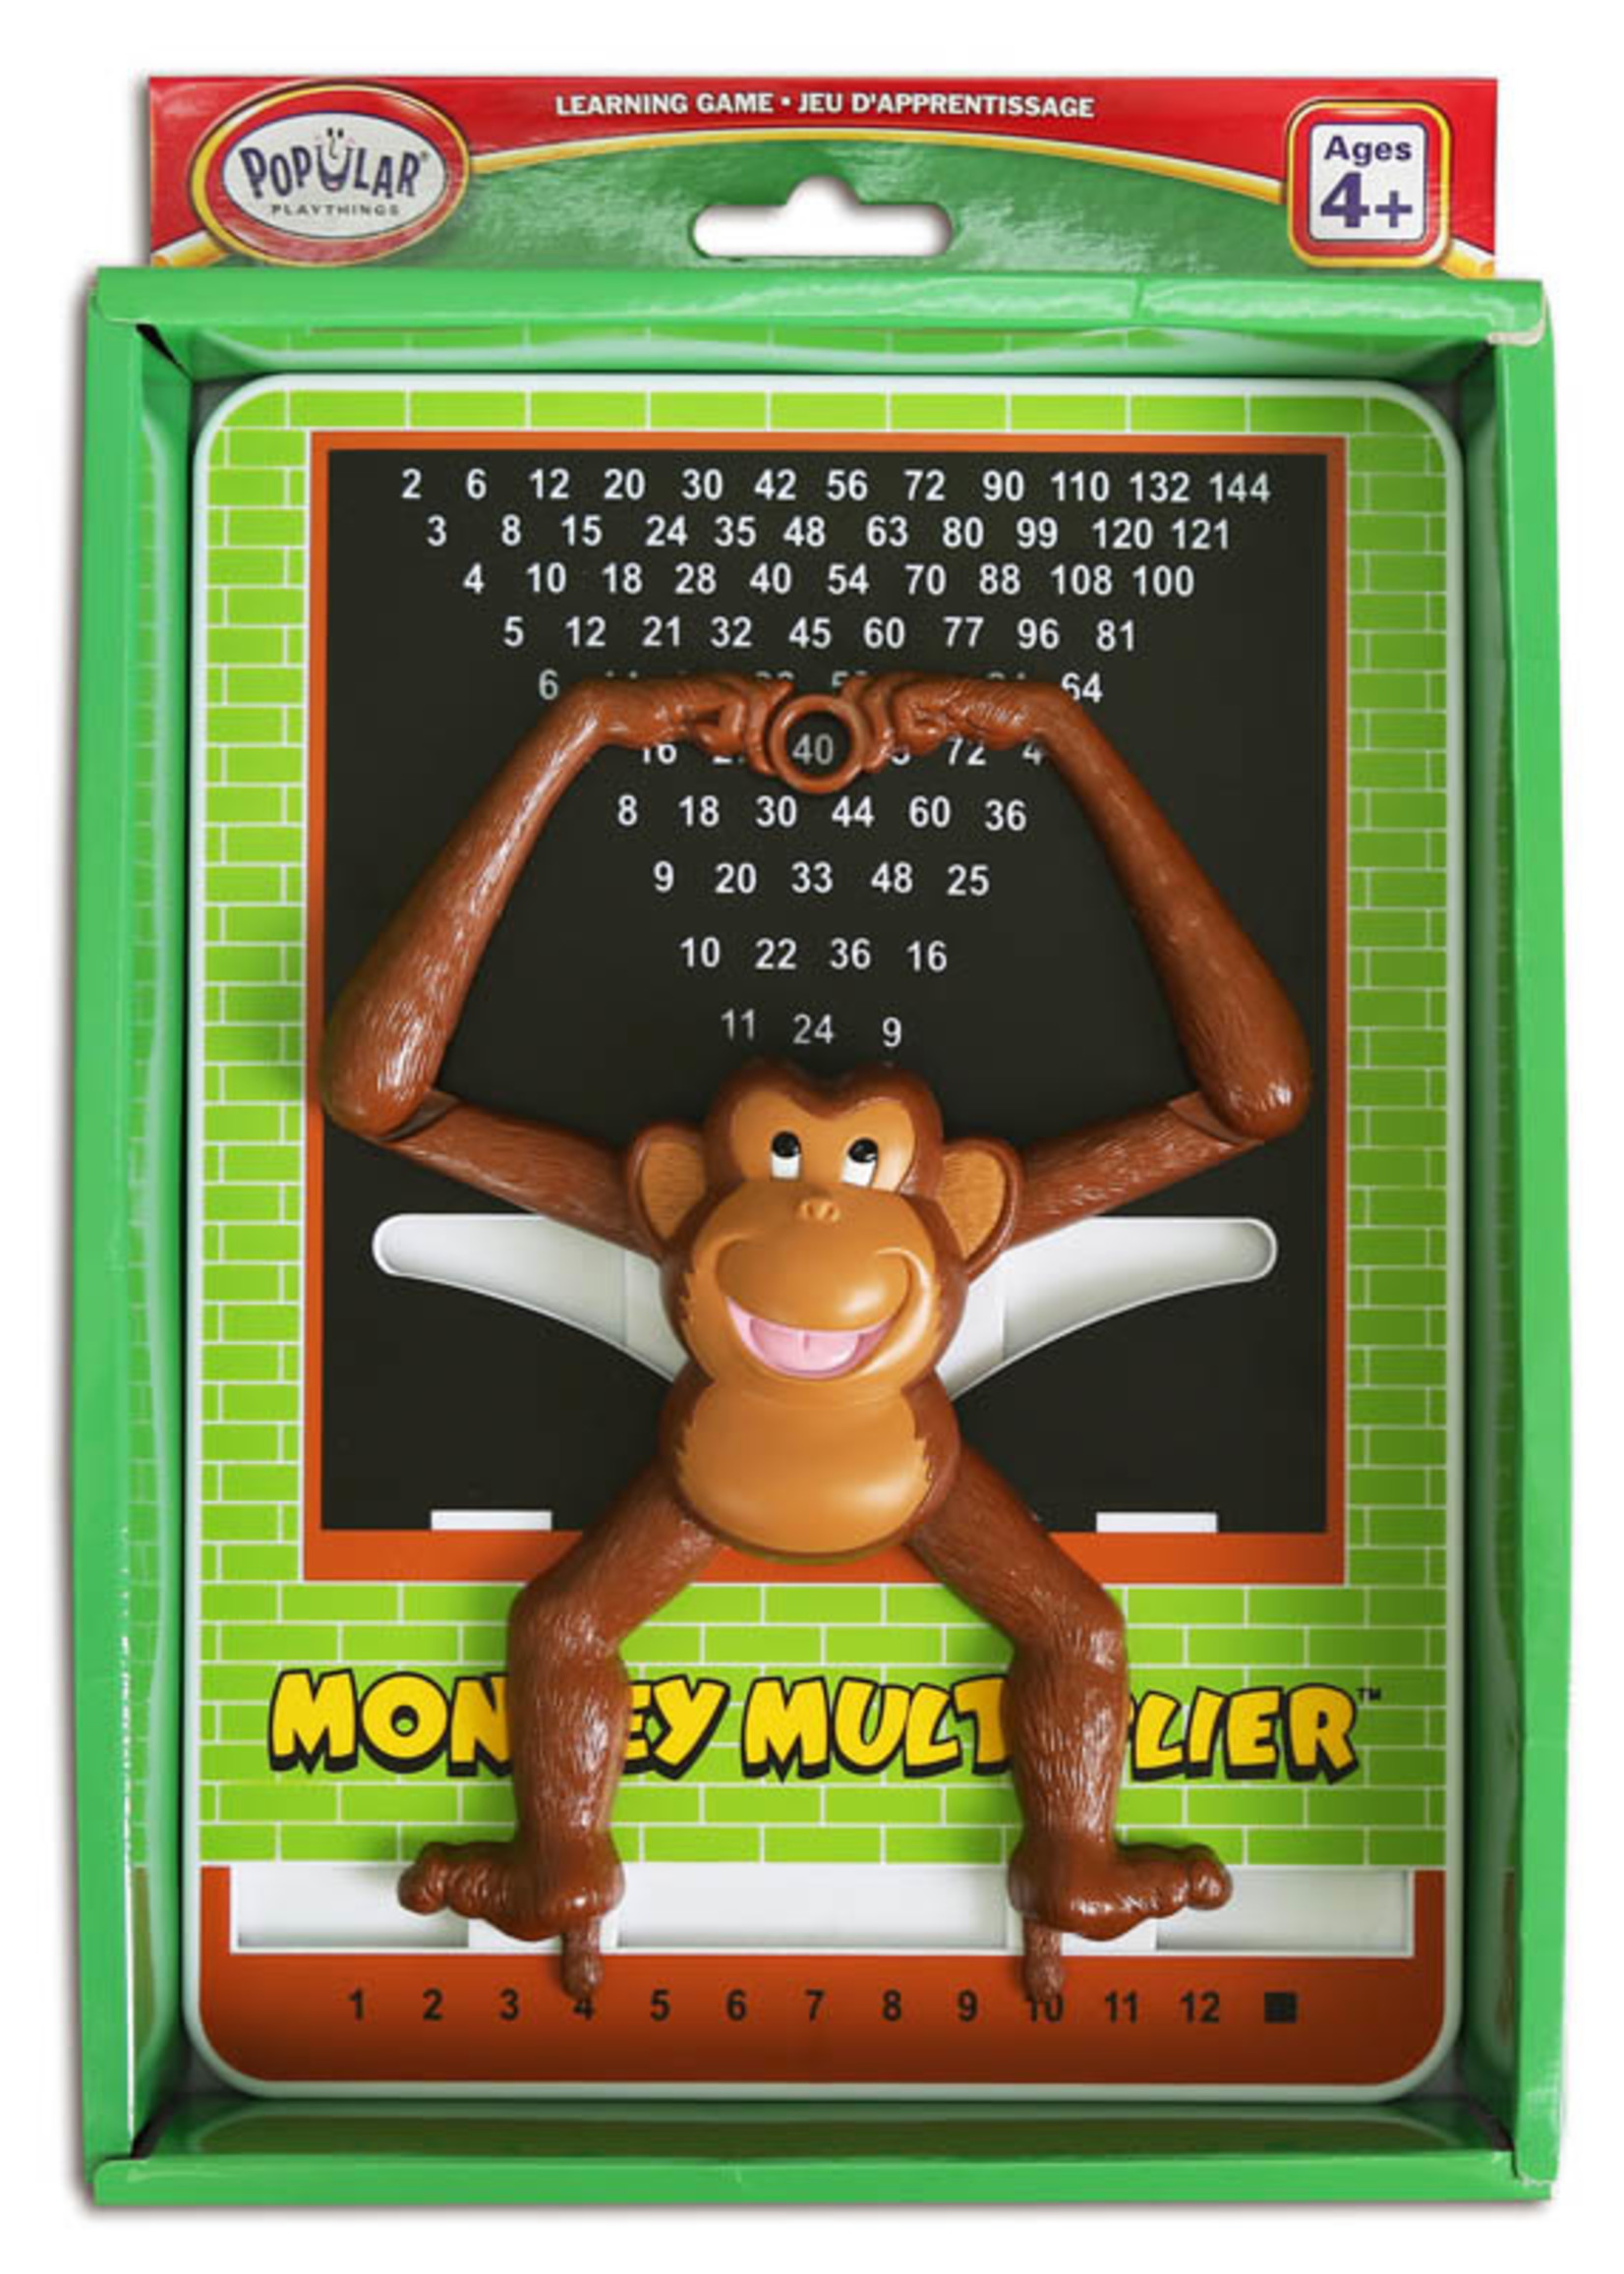 Popular playthings Monkey calculator - Multiplicateur (Bil)